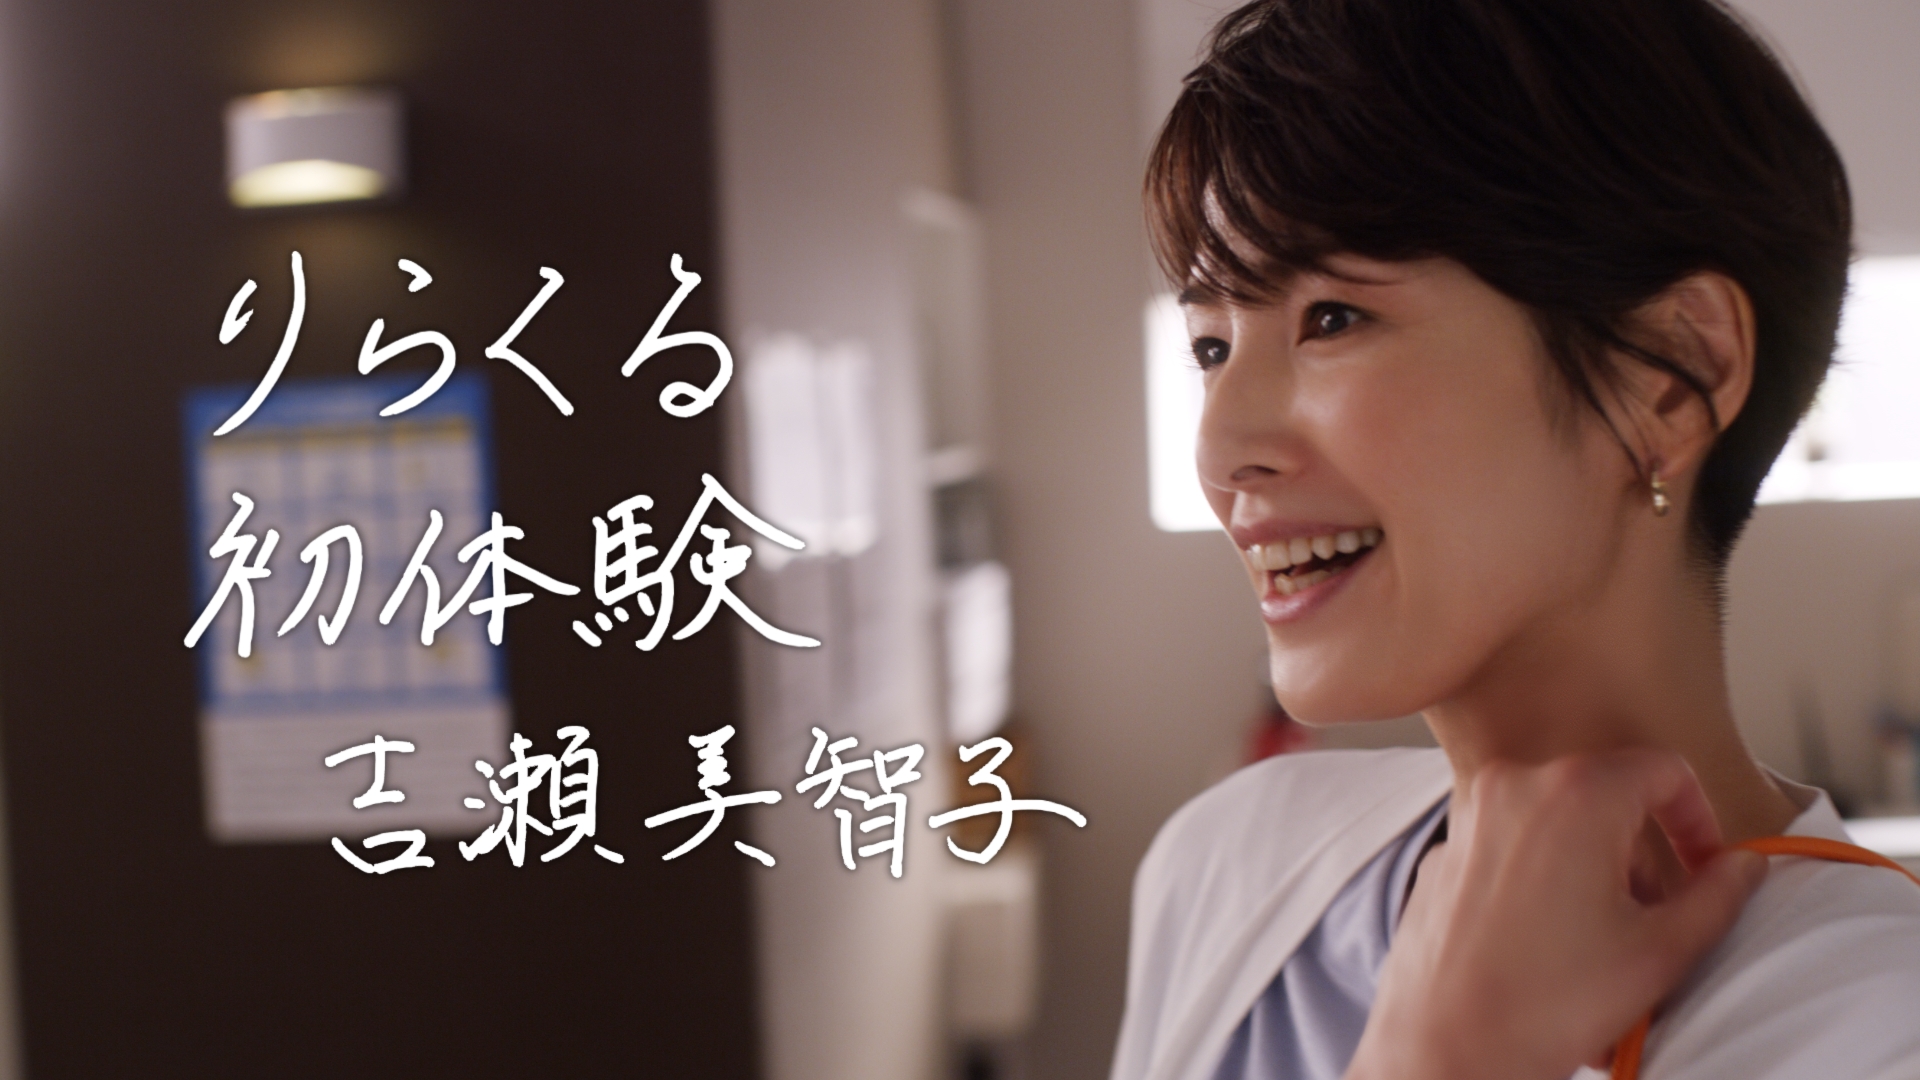 女優 吉瀬美智子が 本格もみほぐし りらくる を初体験 演技なしの反応 気持ちよさそうな表情に注目 りらくる 新cm 価格の理由 篇 公開 株式会社りらくのプレスリリース